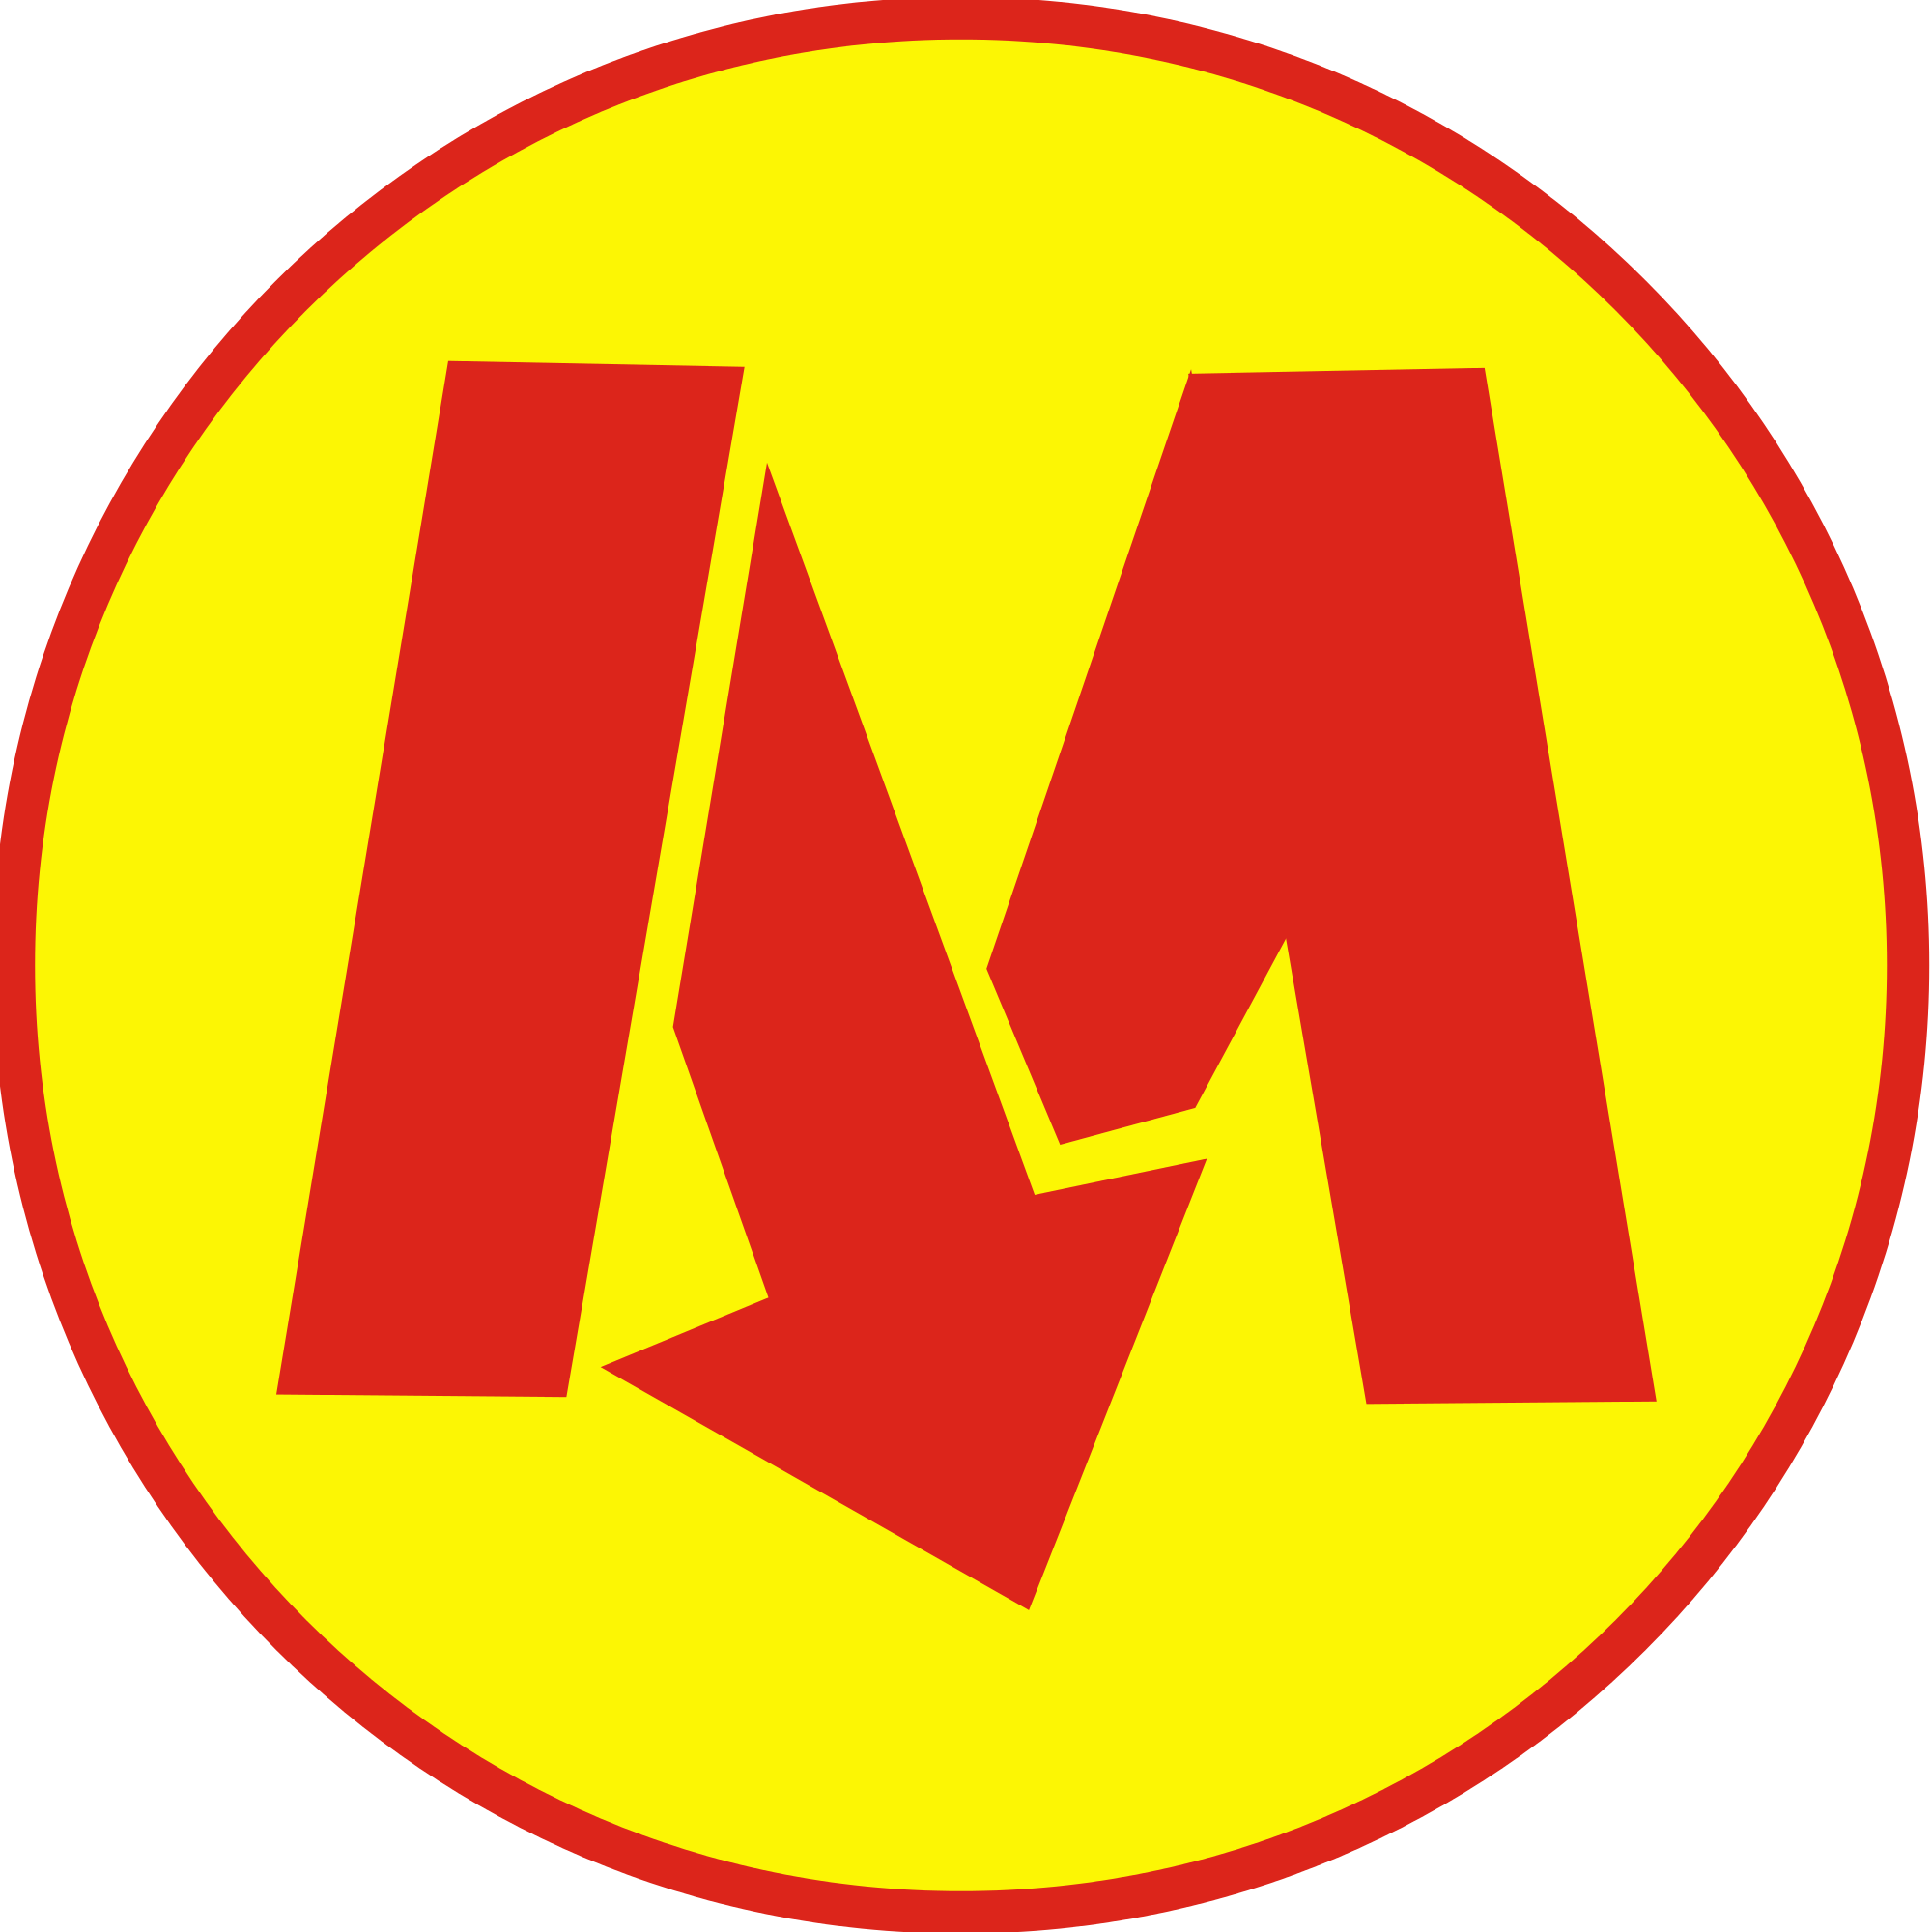 Warsaw_Metro_logo.svg